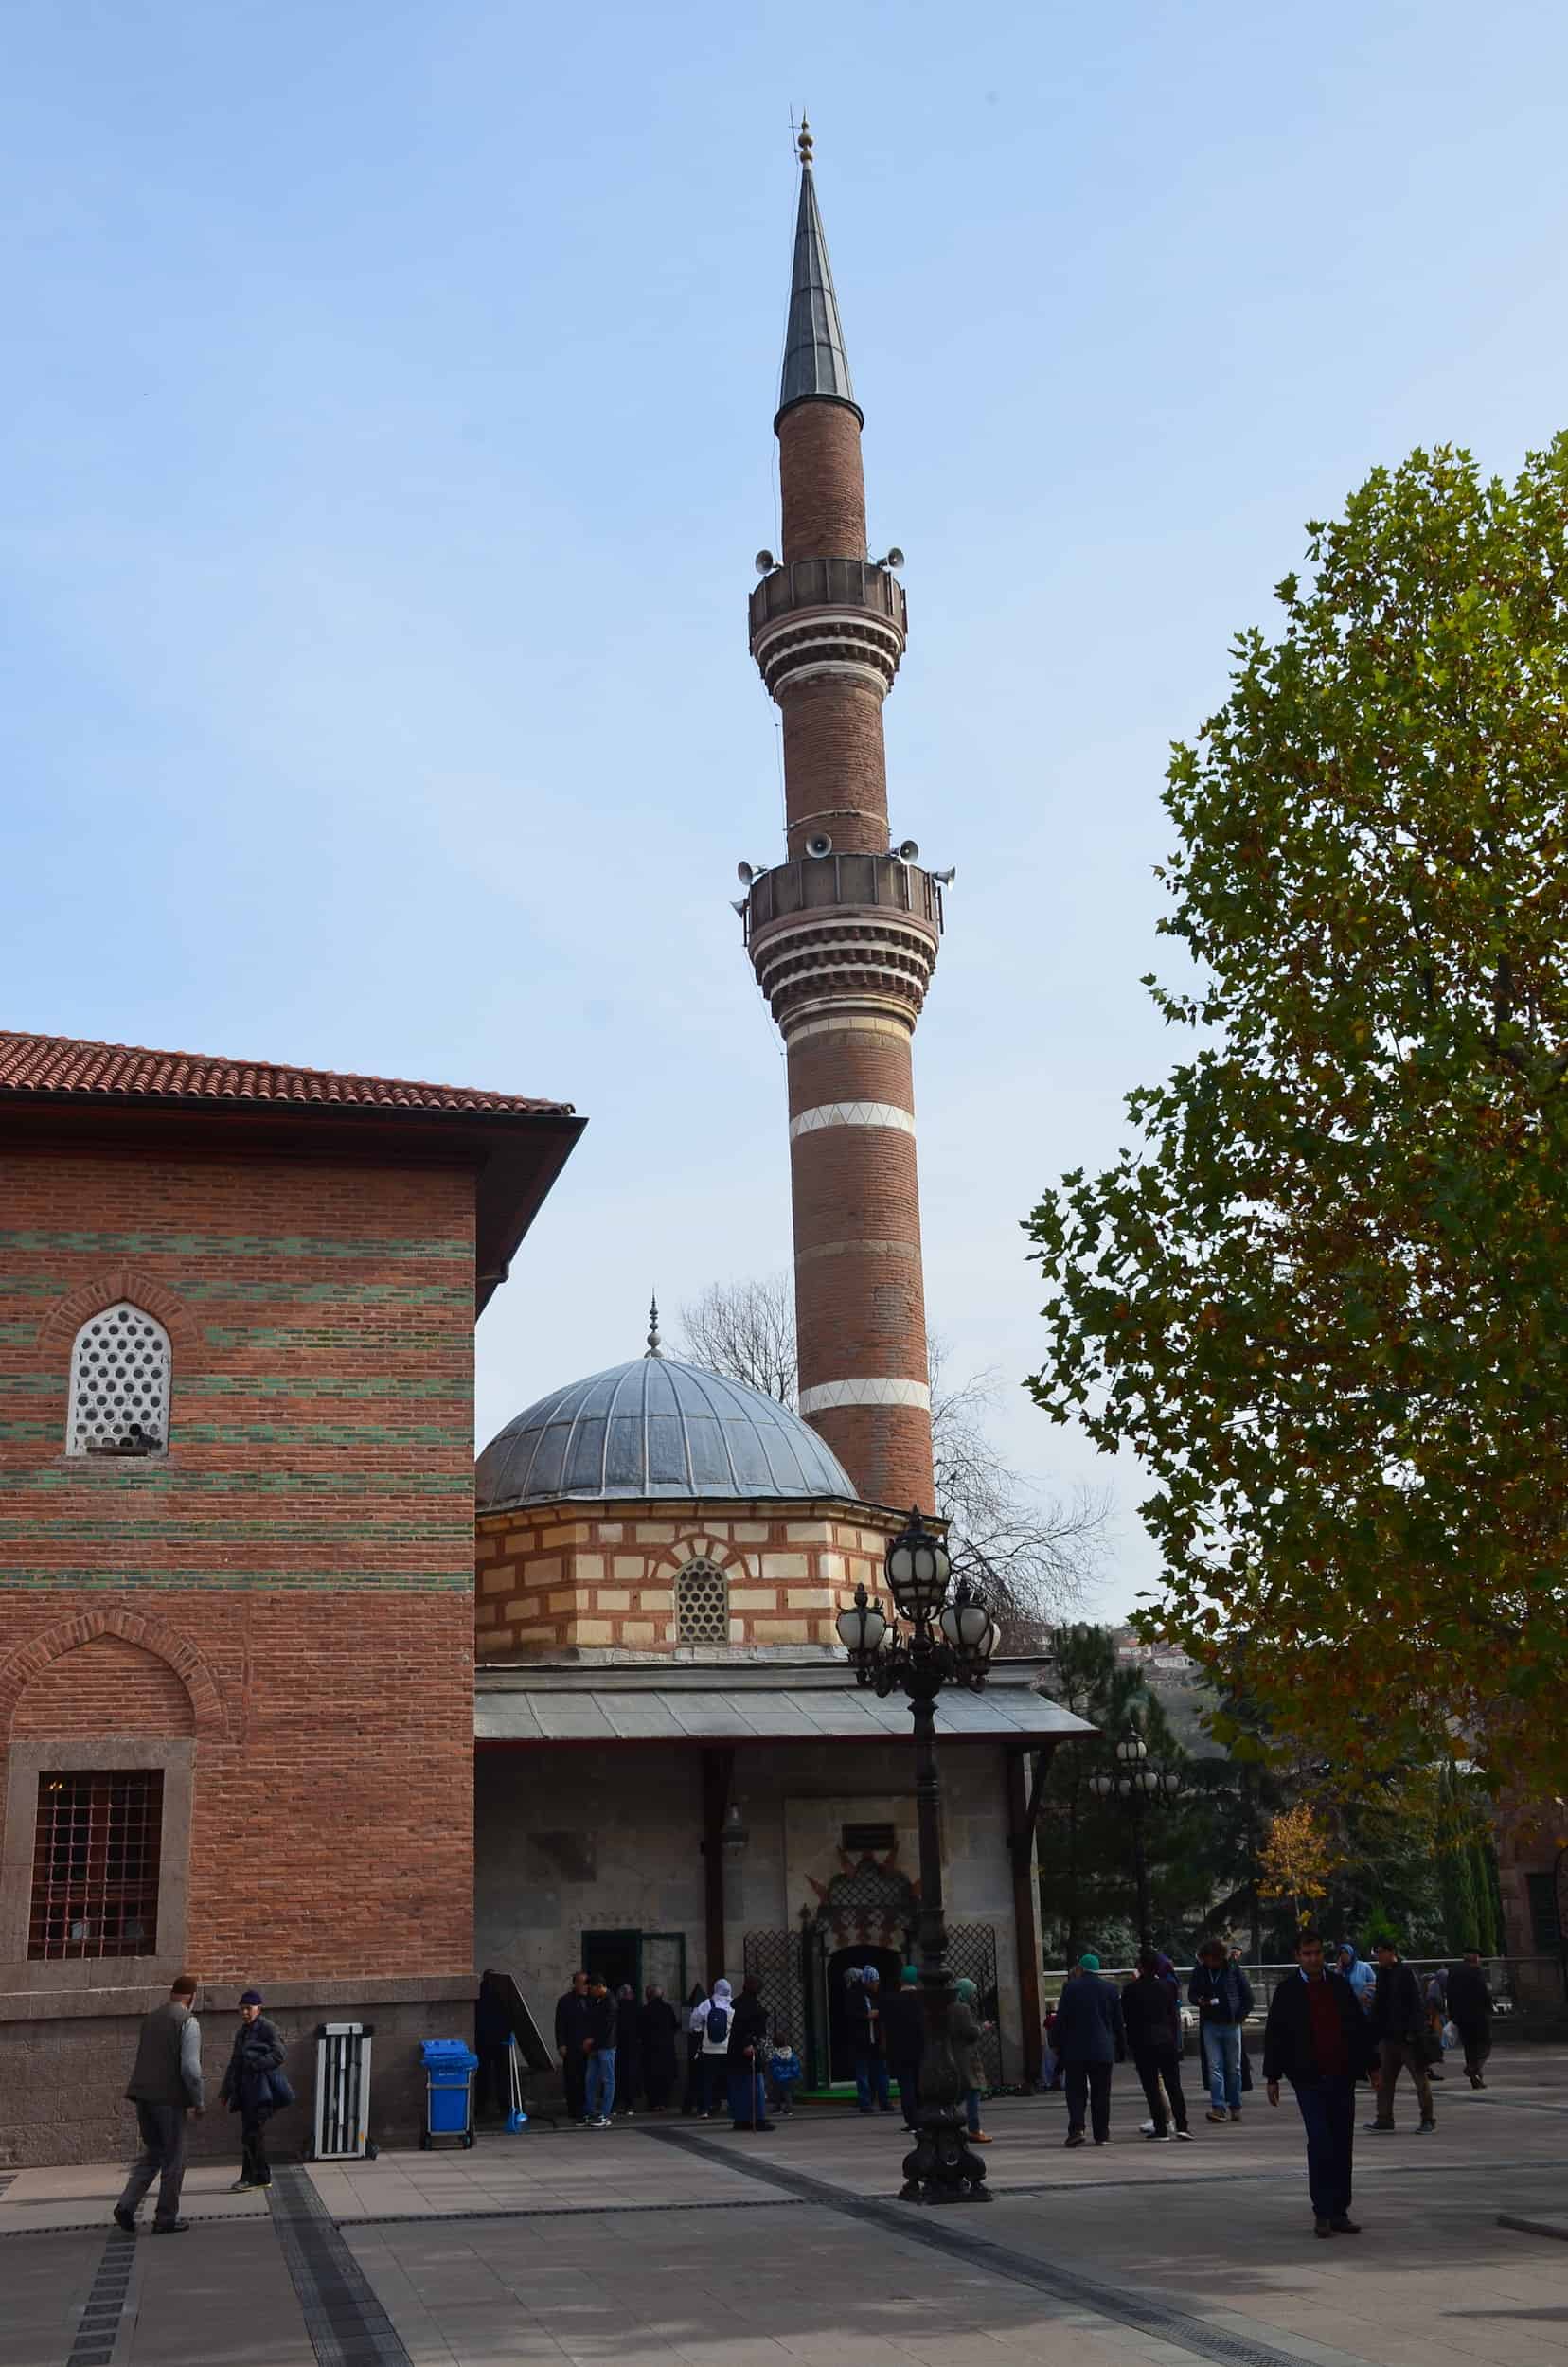 Minaret of the Hacı Bayram Mosque in Ulus, Ankara, Turkey